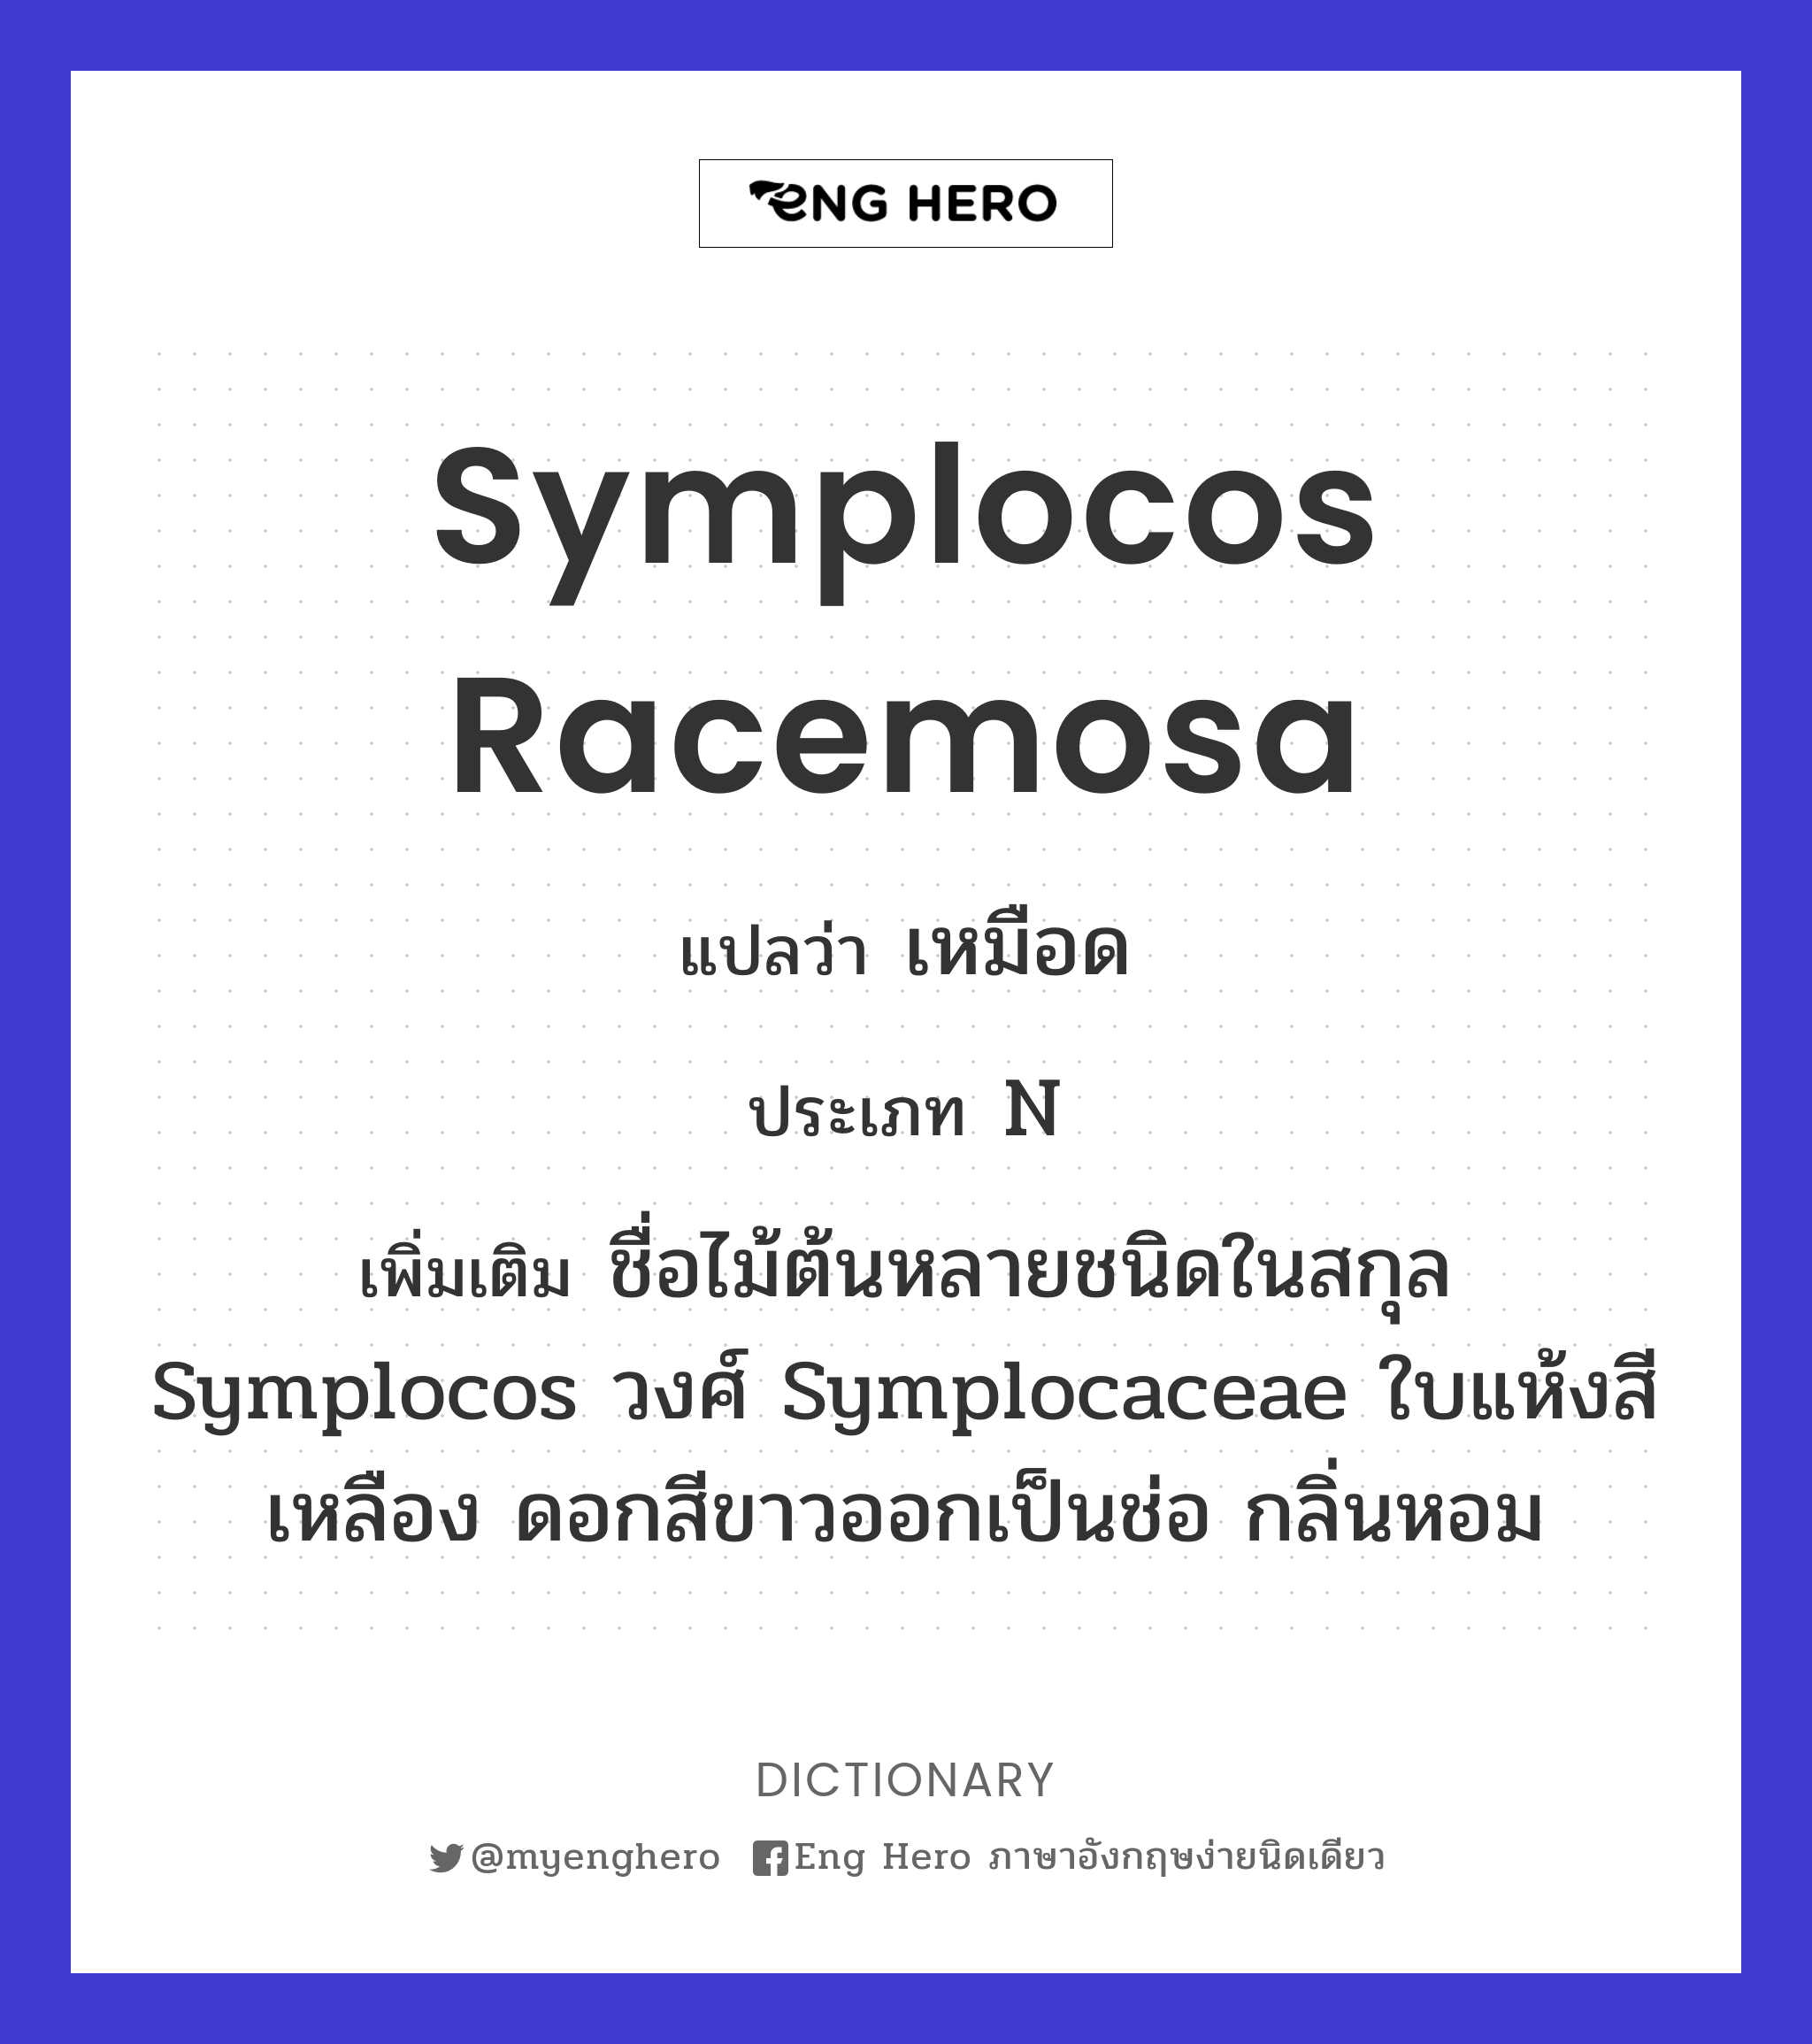 Symplocos racemosa